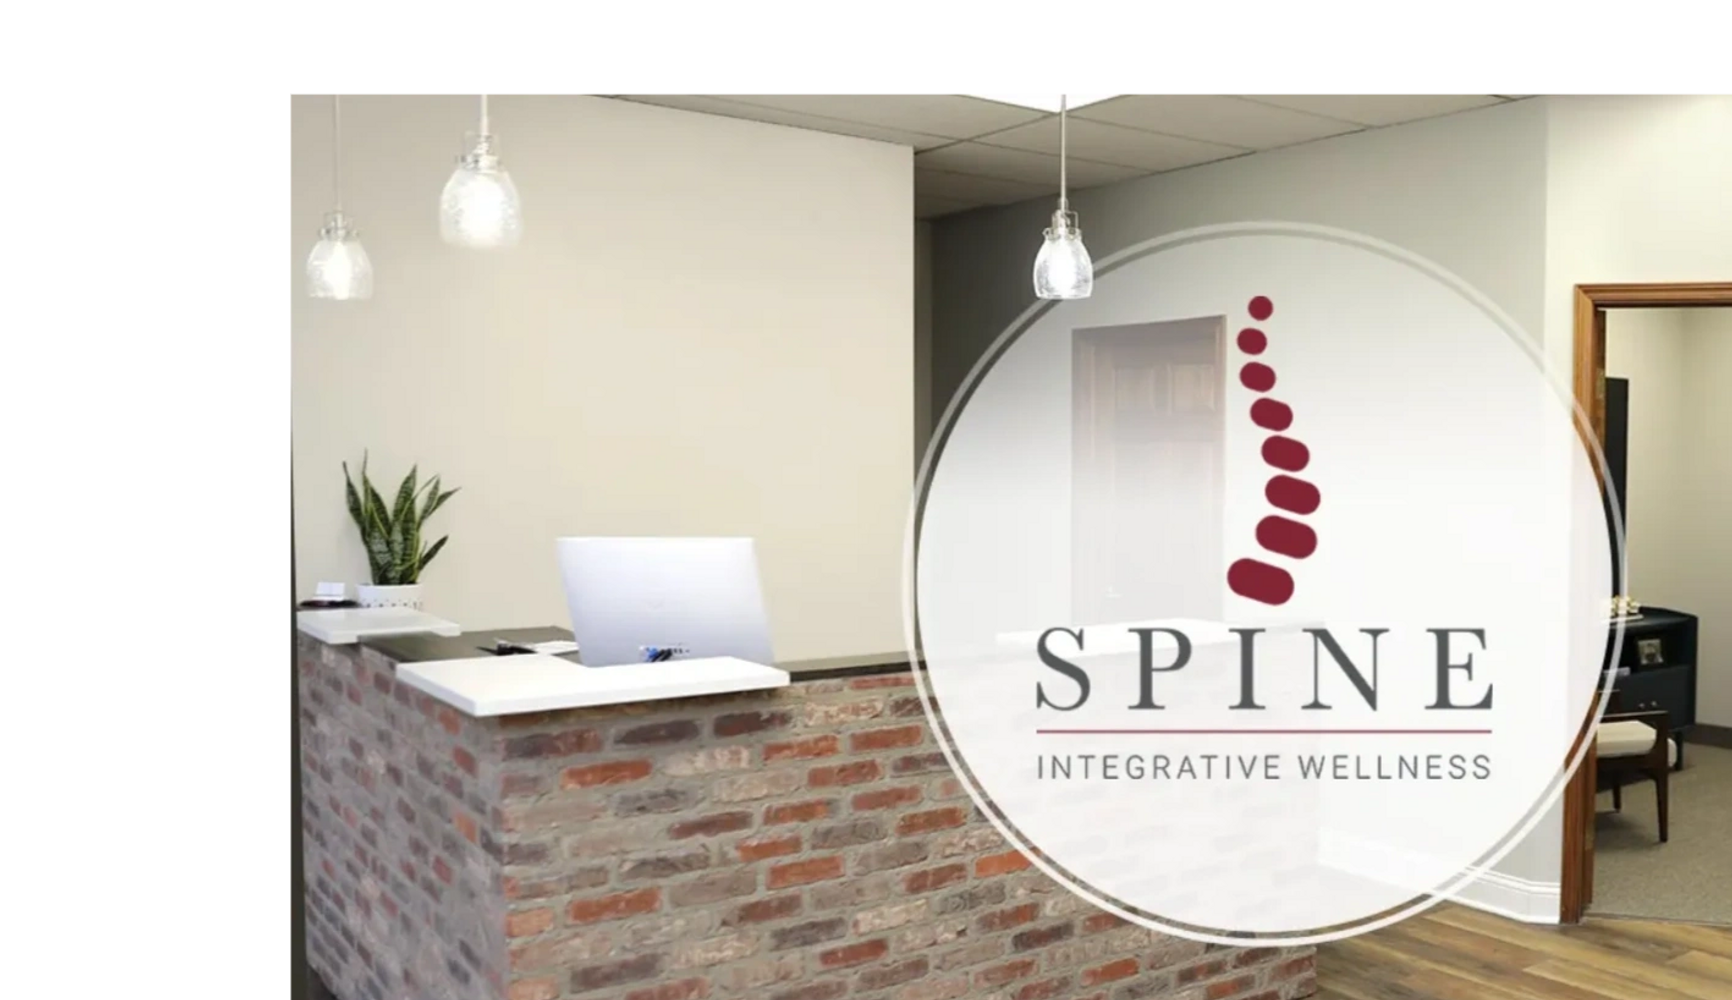 Spine Integrative Wellness